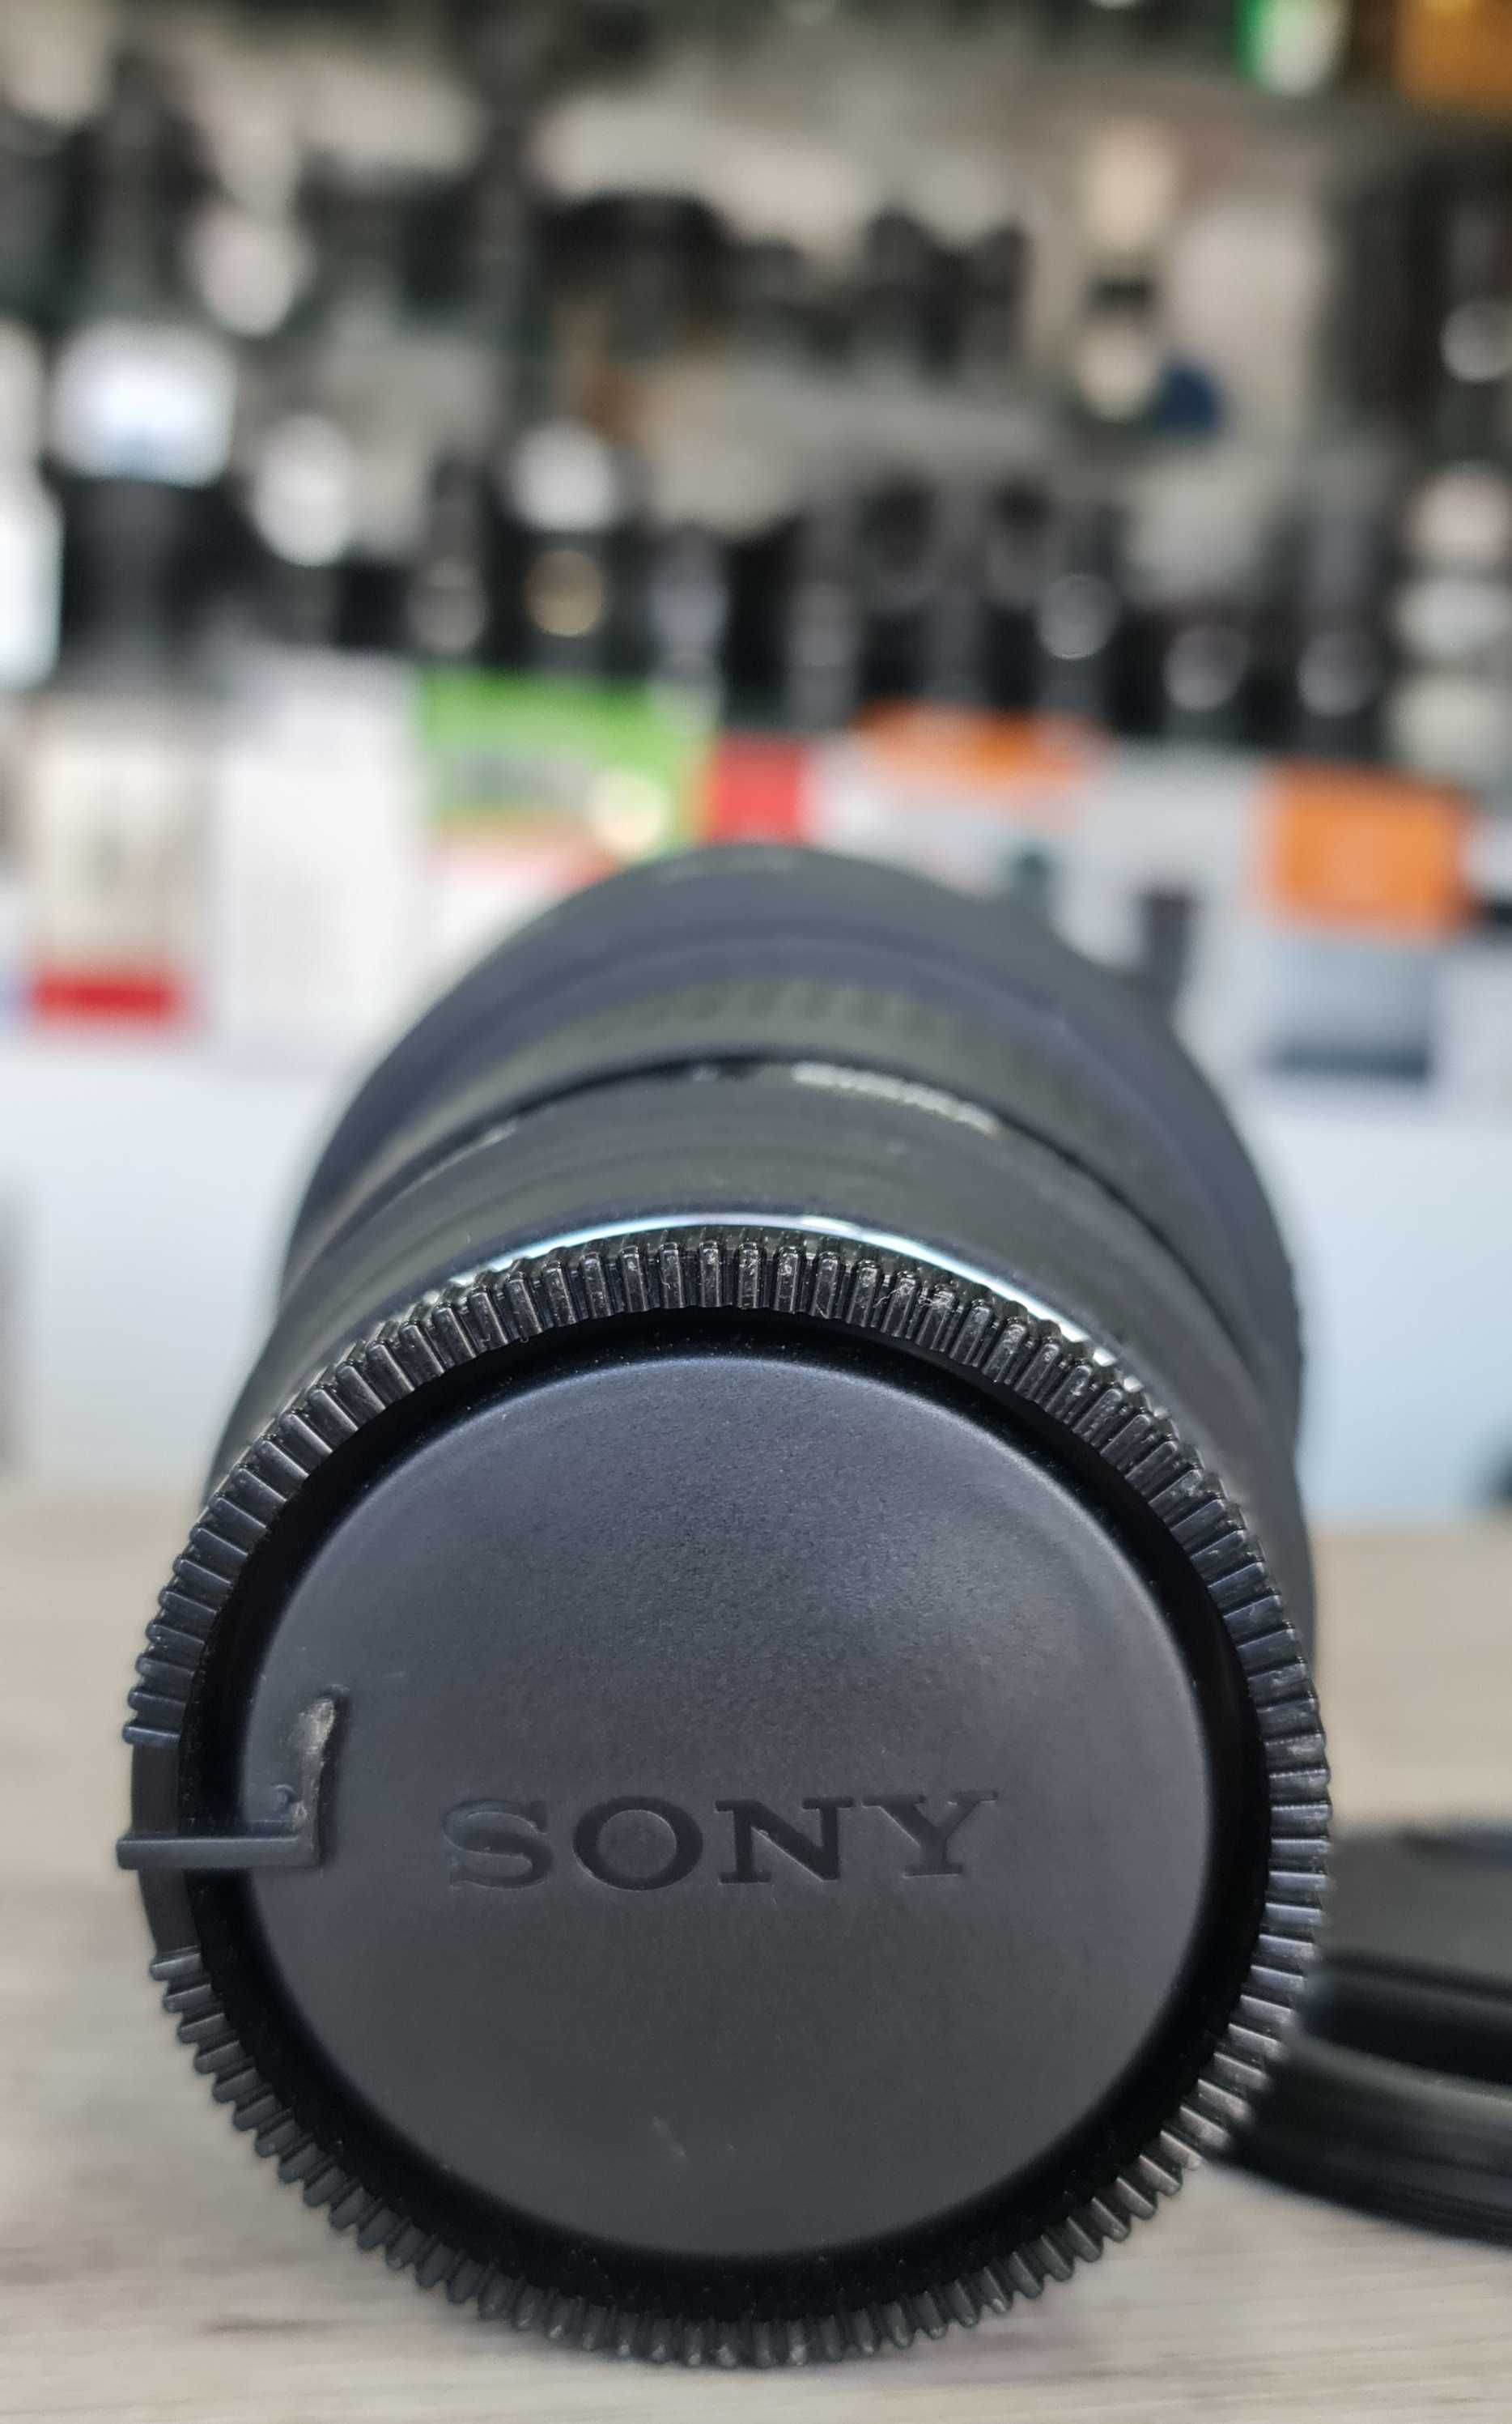 Sony / Sigma 28mm 1.8D para Sony A-Mount em extado excelente